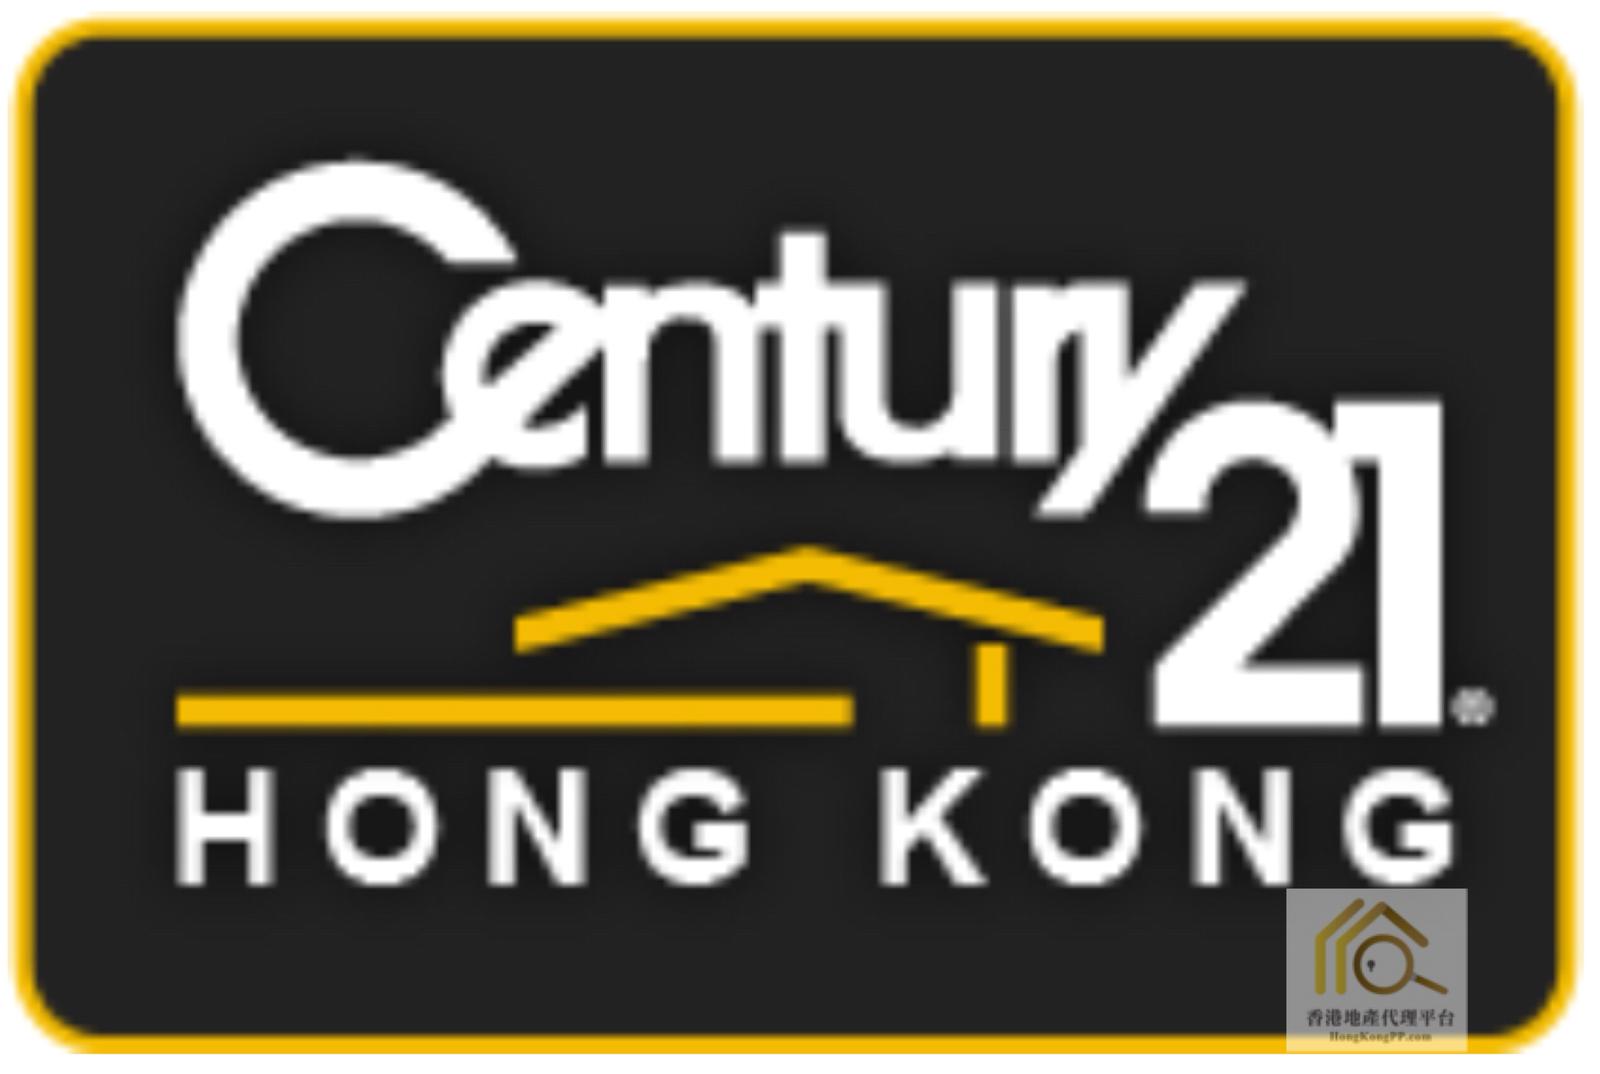 地產代理公司: 世紀21世紀21亞太物業顧問有限公司